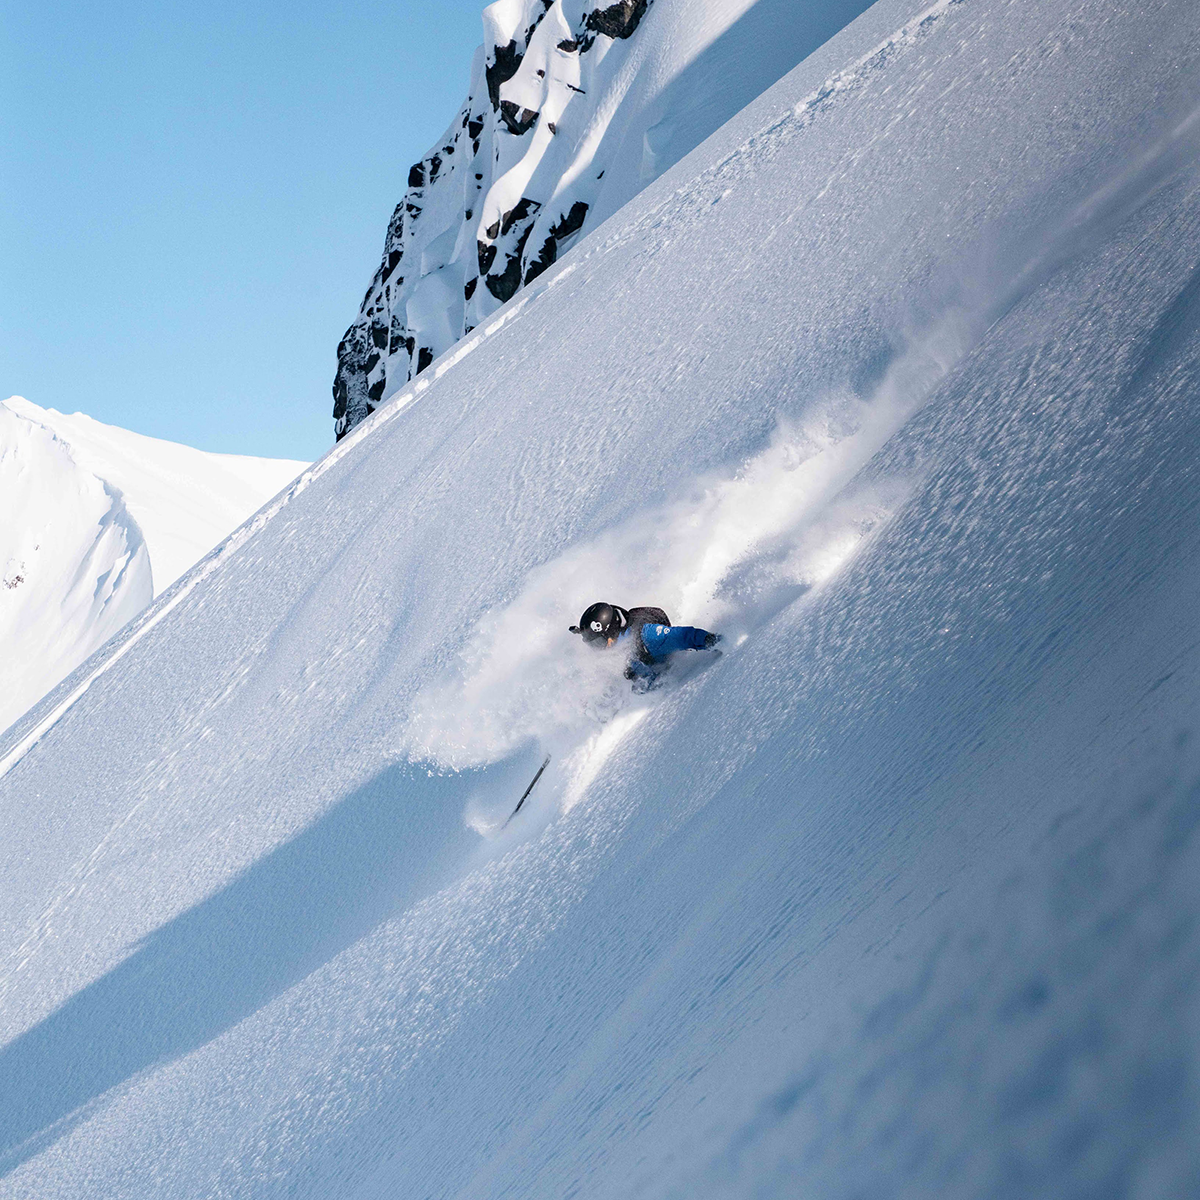 freeride skier performs slash turn in deep powder